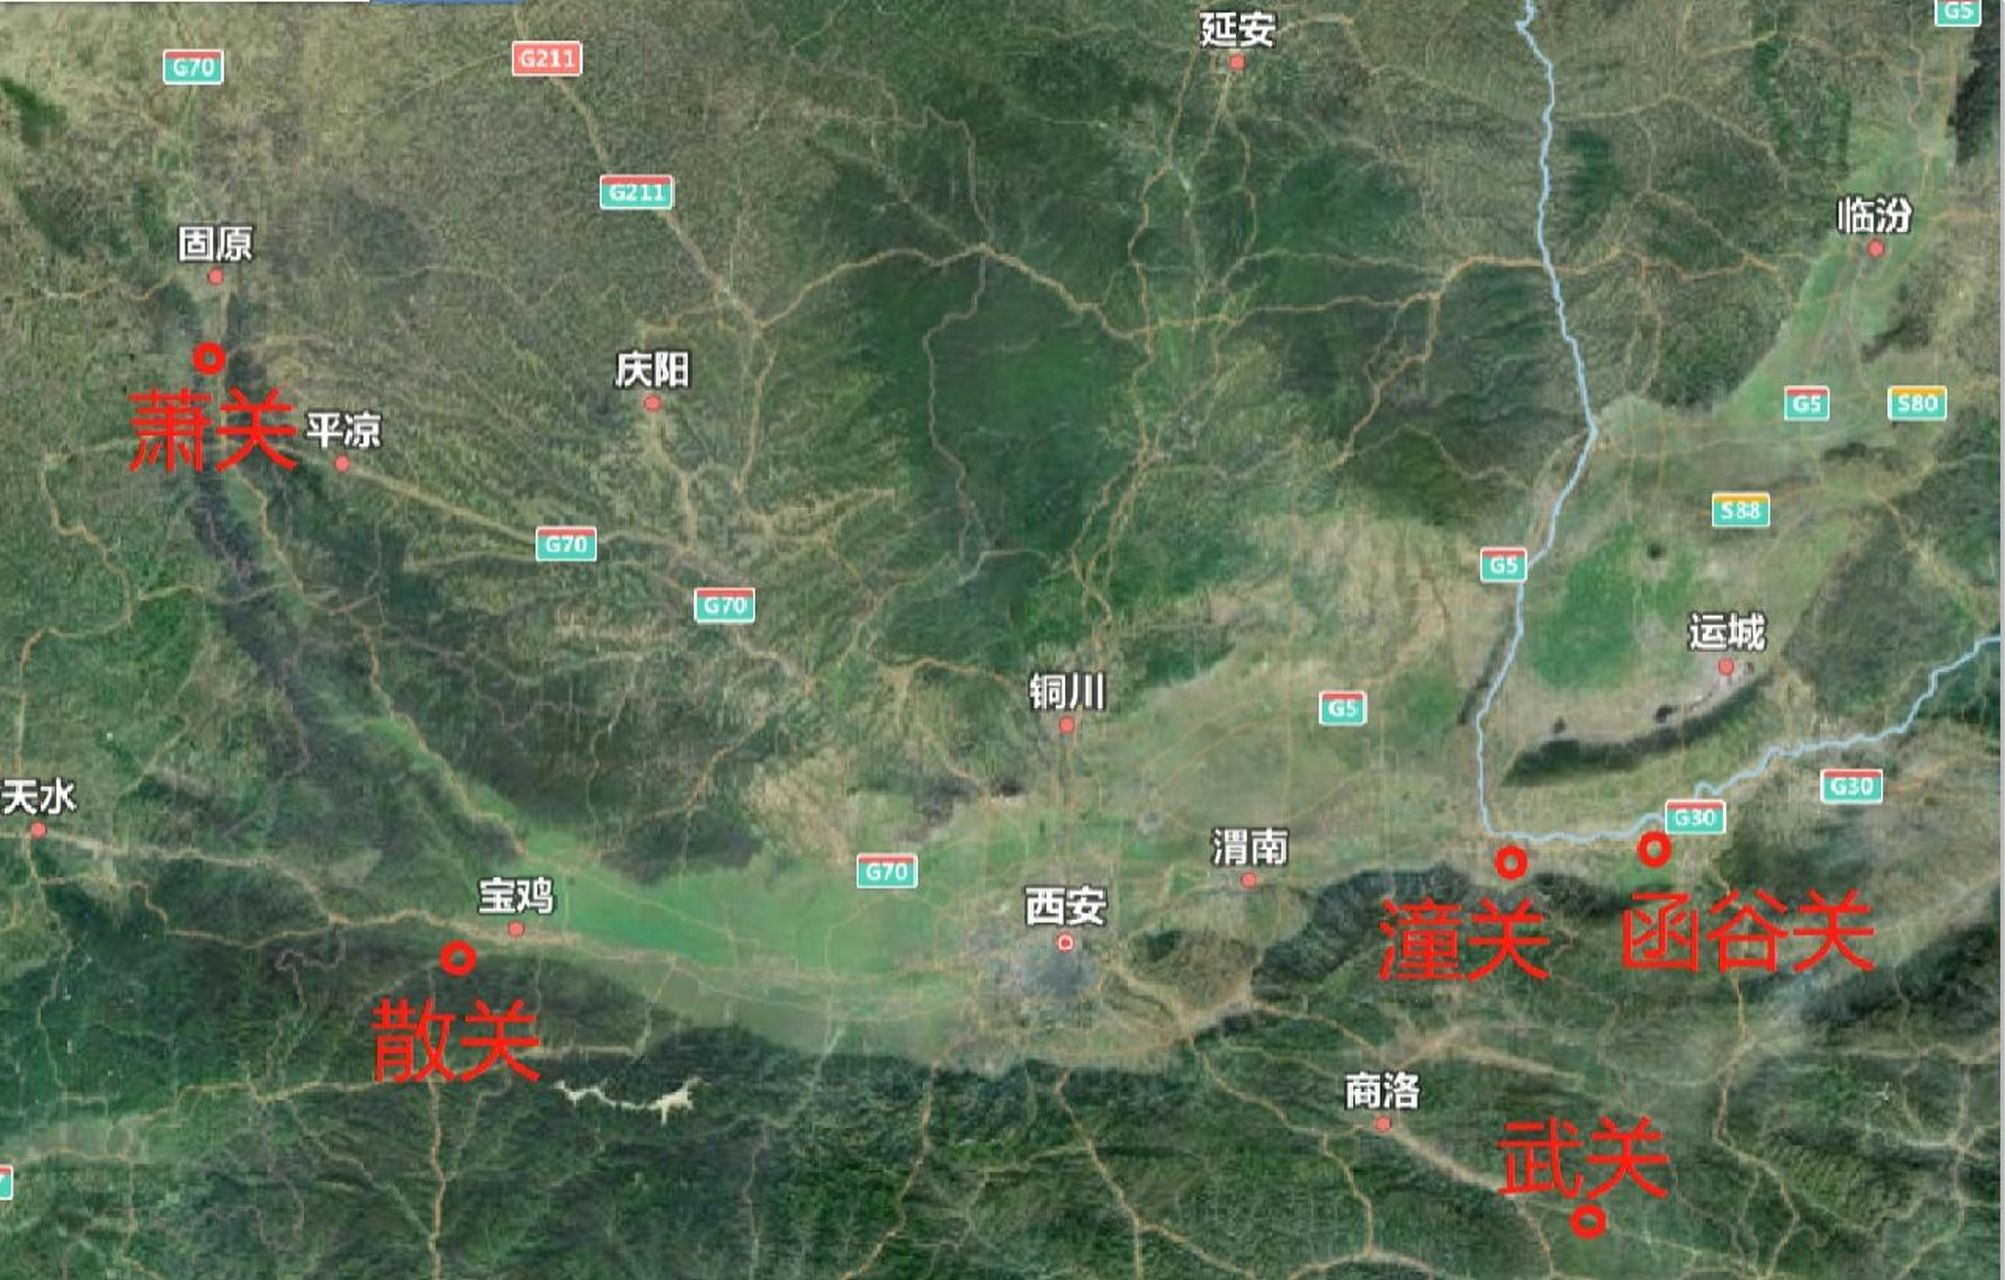 中国著名关口地理图图片